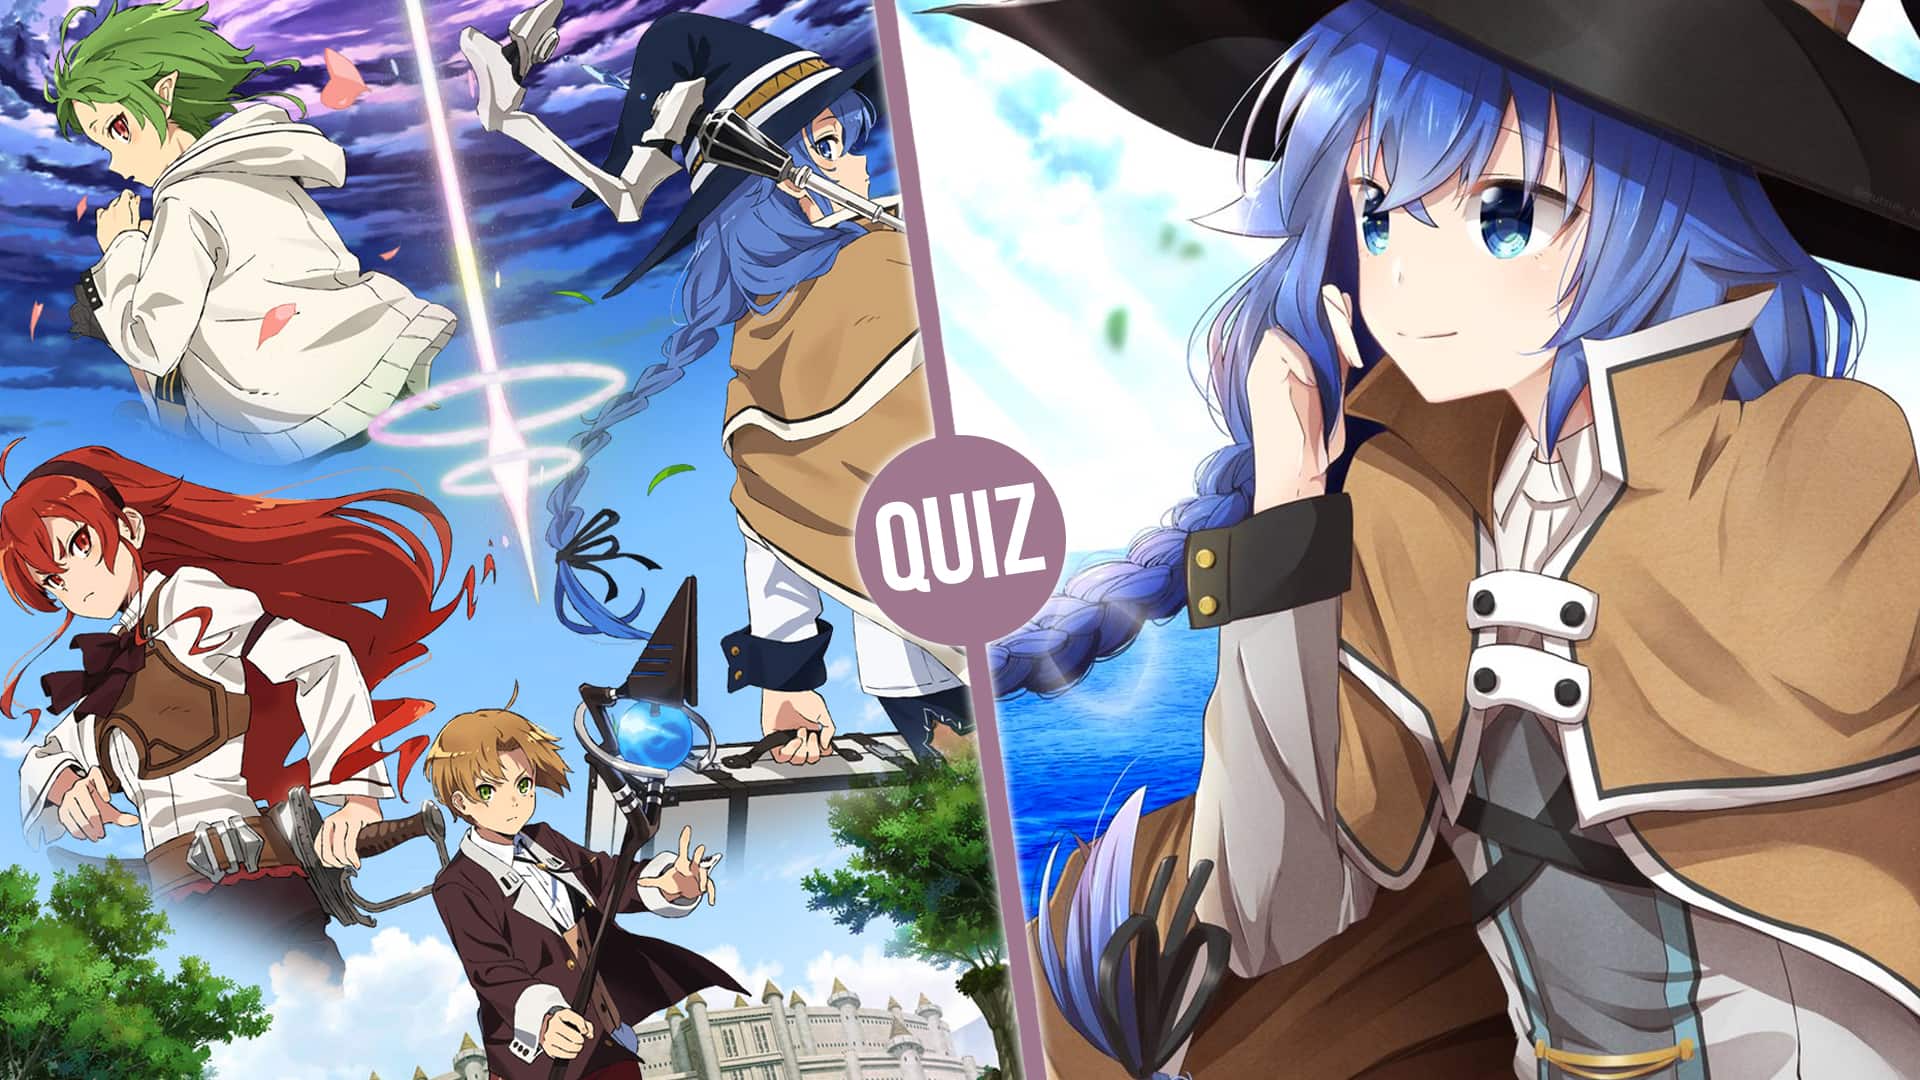 Desafio Anime Mushoku Tensei Nível Difícil #anime #quiz #mushokutensei